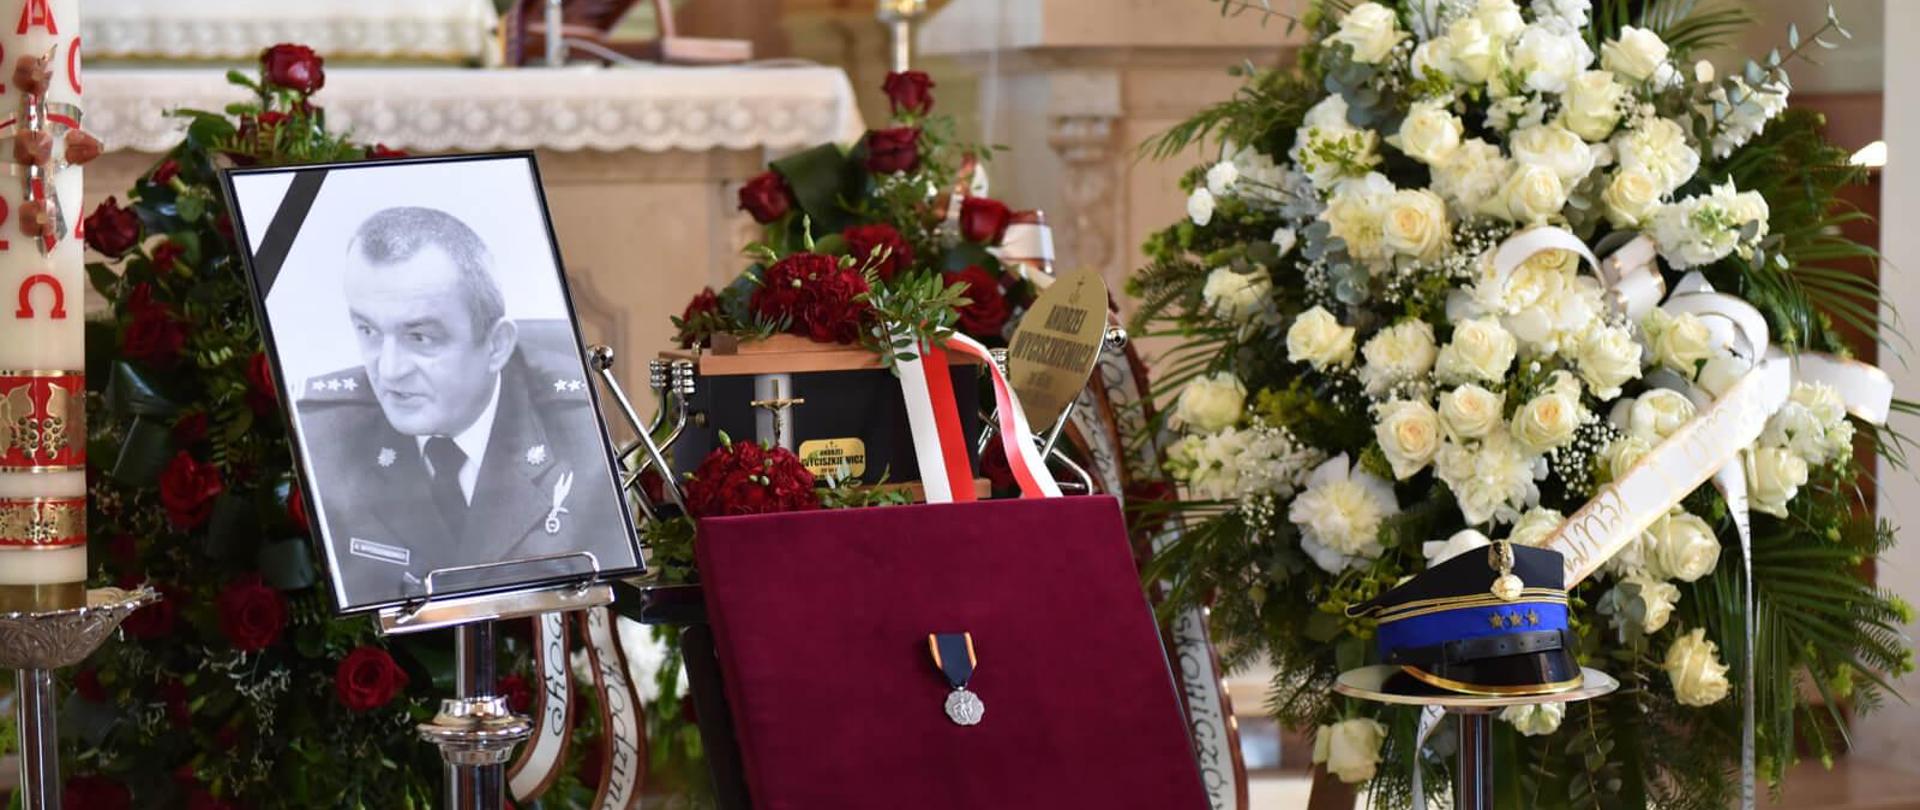 Widok urny z prochami zmarłego, fotografia zmarłego z czarną wstążką, czapka wyjściowa oficera oraz na czerwonej poduszce Krzyż Świętego Floriana. Obok urny z prochami stoją dwa wieńce.